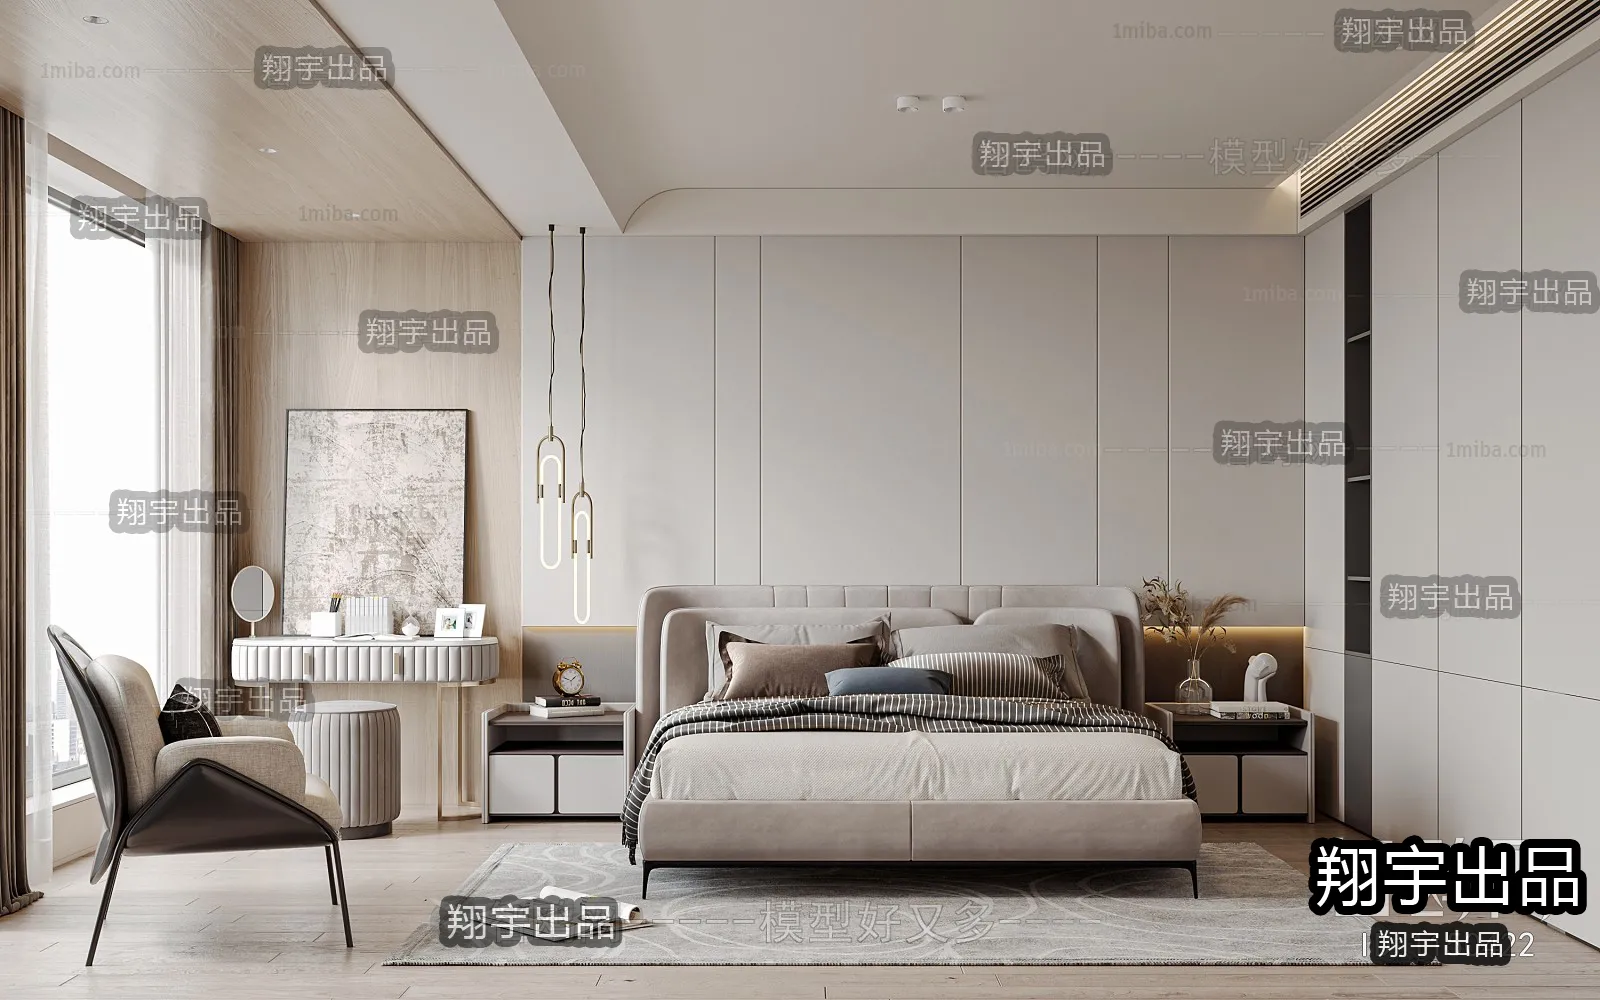 Bedroom – Modern Interior Design – 3D Models – 041